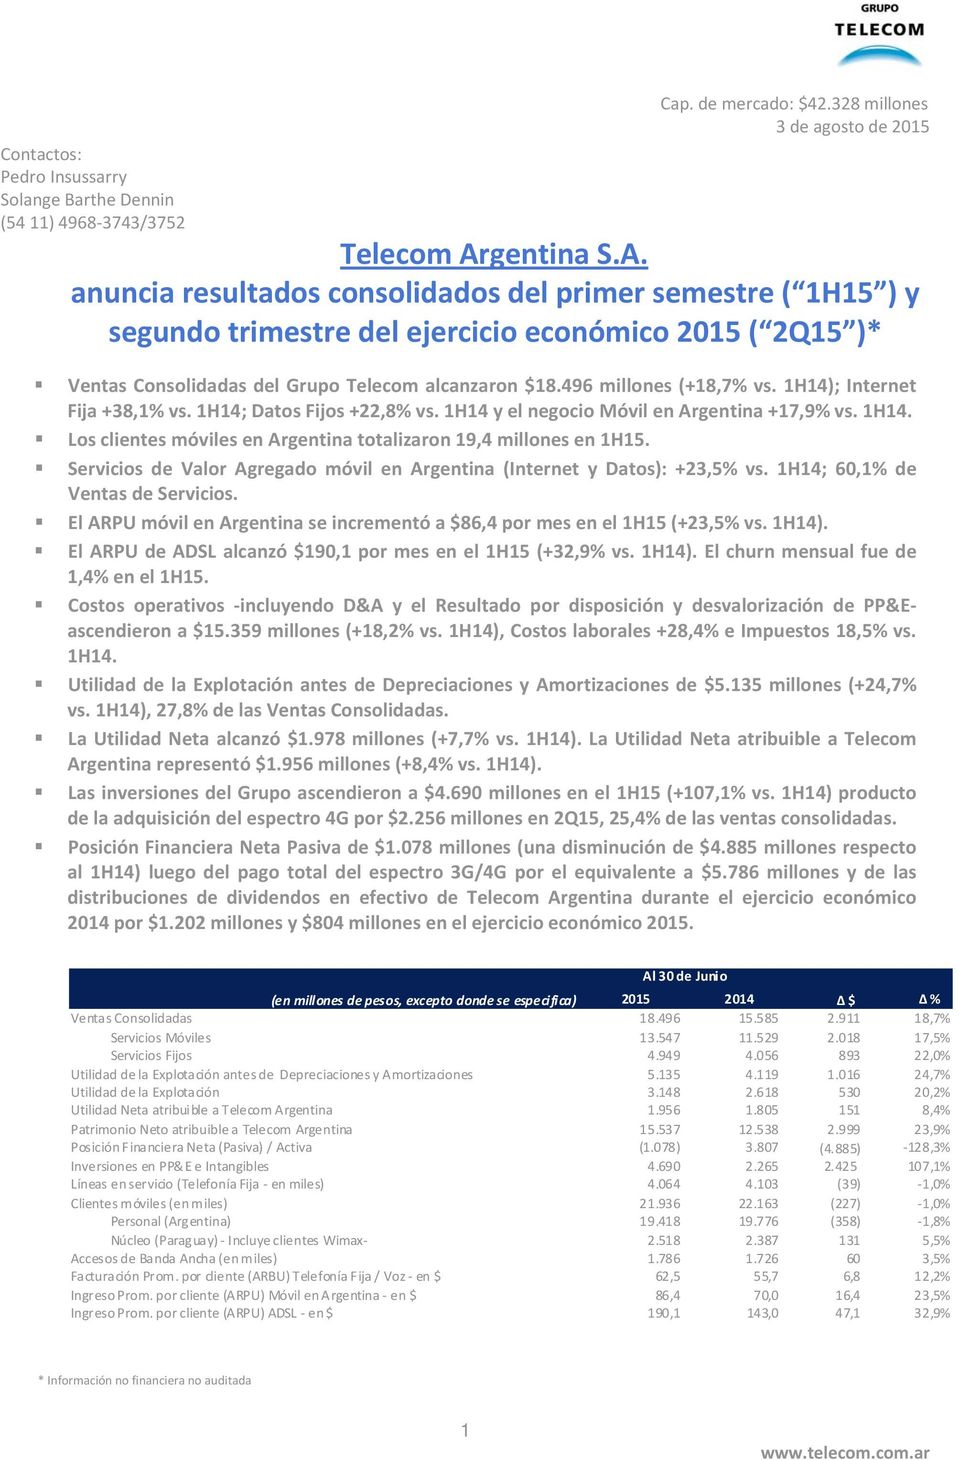 496 millones (+18,7% vs. 1H14); Internet Fija +38,1% vs. 1H14; Datos Fijos +22,8% vs. 1H14 y el negocio Móvil en Argentina +17,9% vs. 1H14. Los clientes móviles en Argentina totalizaron 19,4 millones en 1H15.